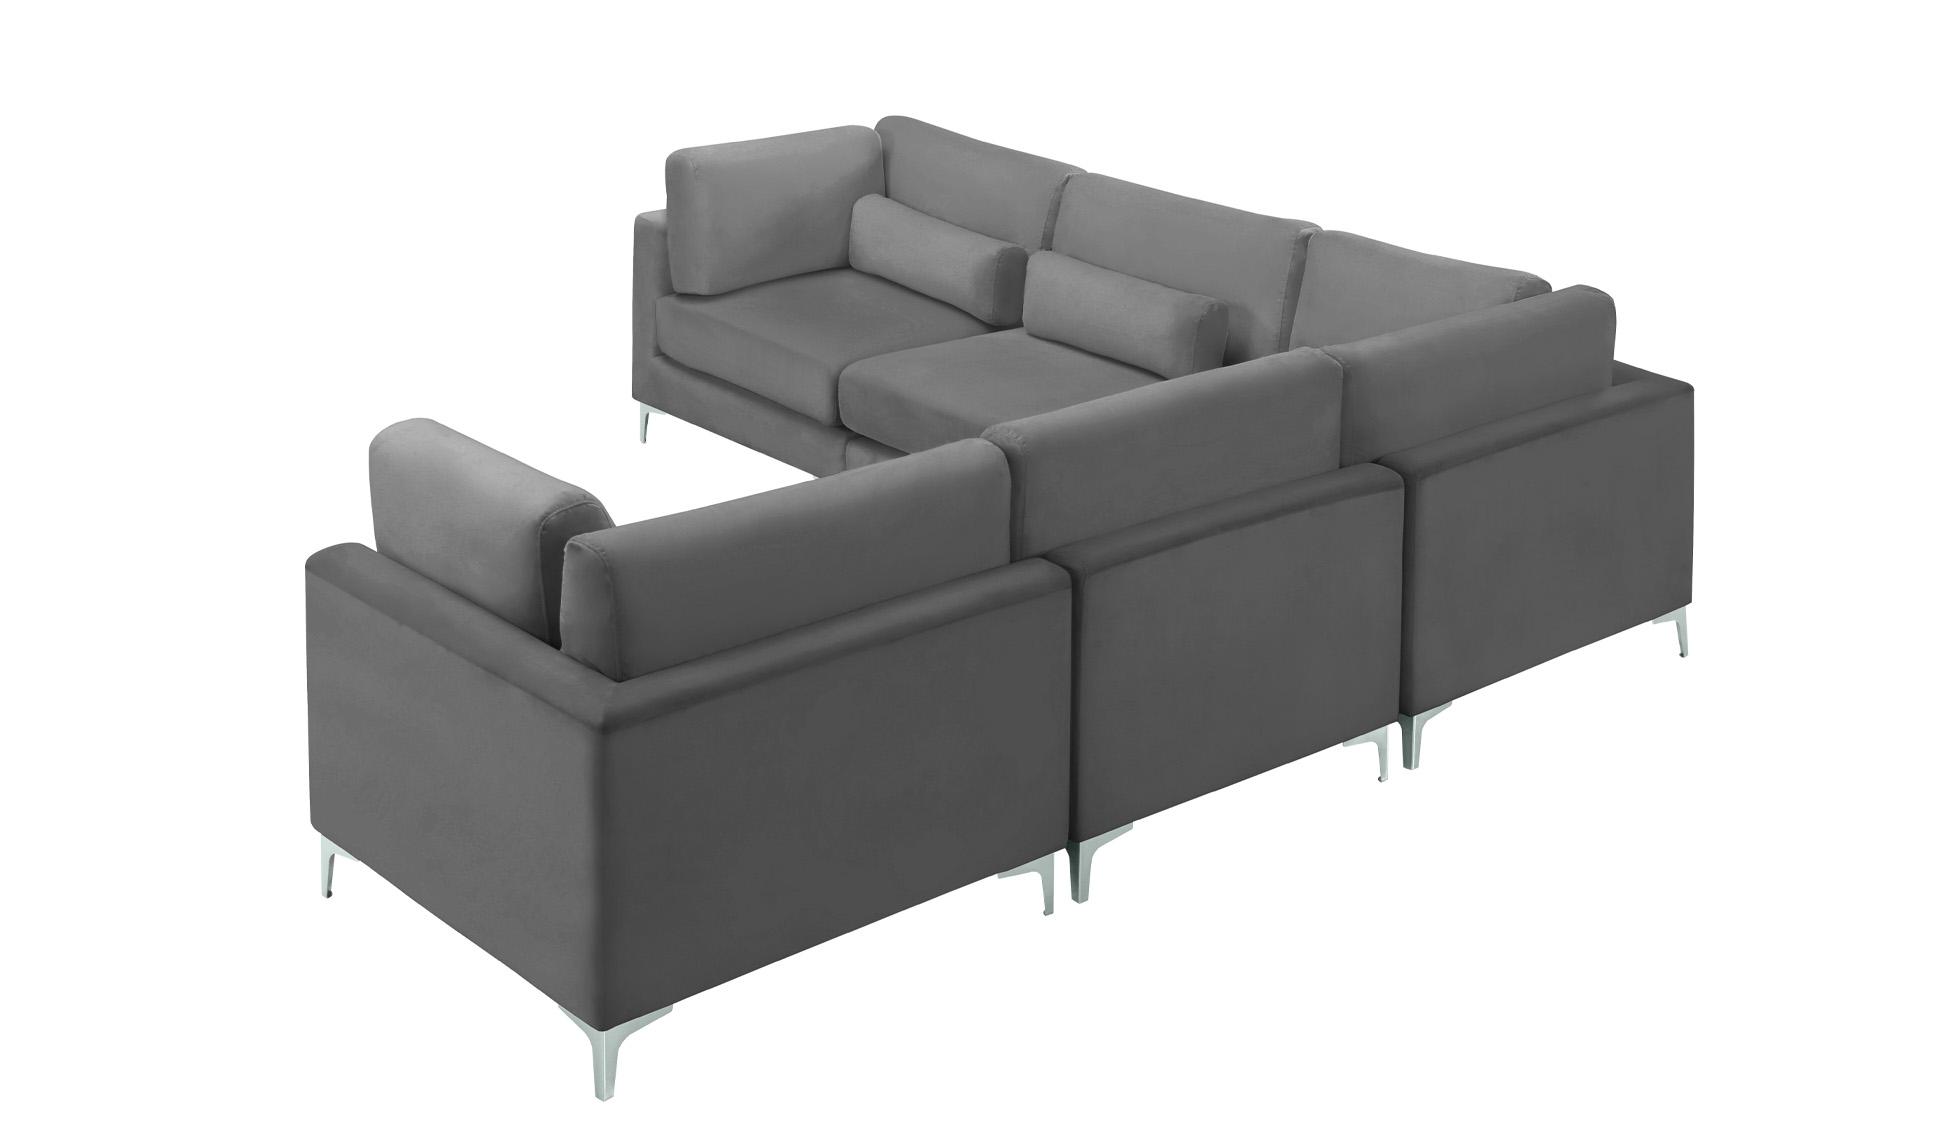 

    
Meridian Furniture JULIA 605Grey-Sec5C Modular Sectional Sofa Gray 605Grey-Sec5C
